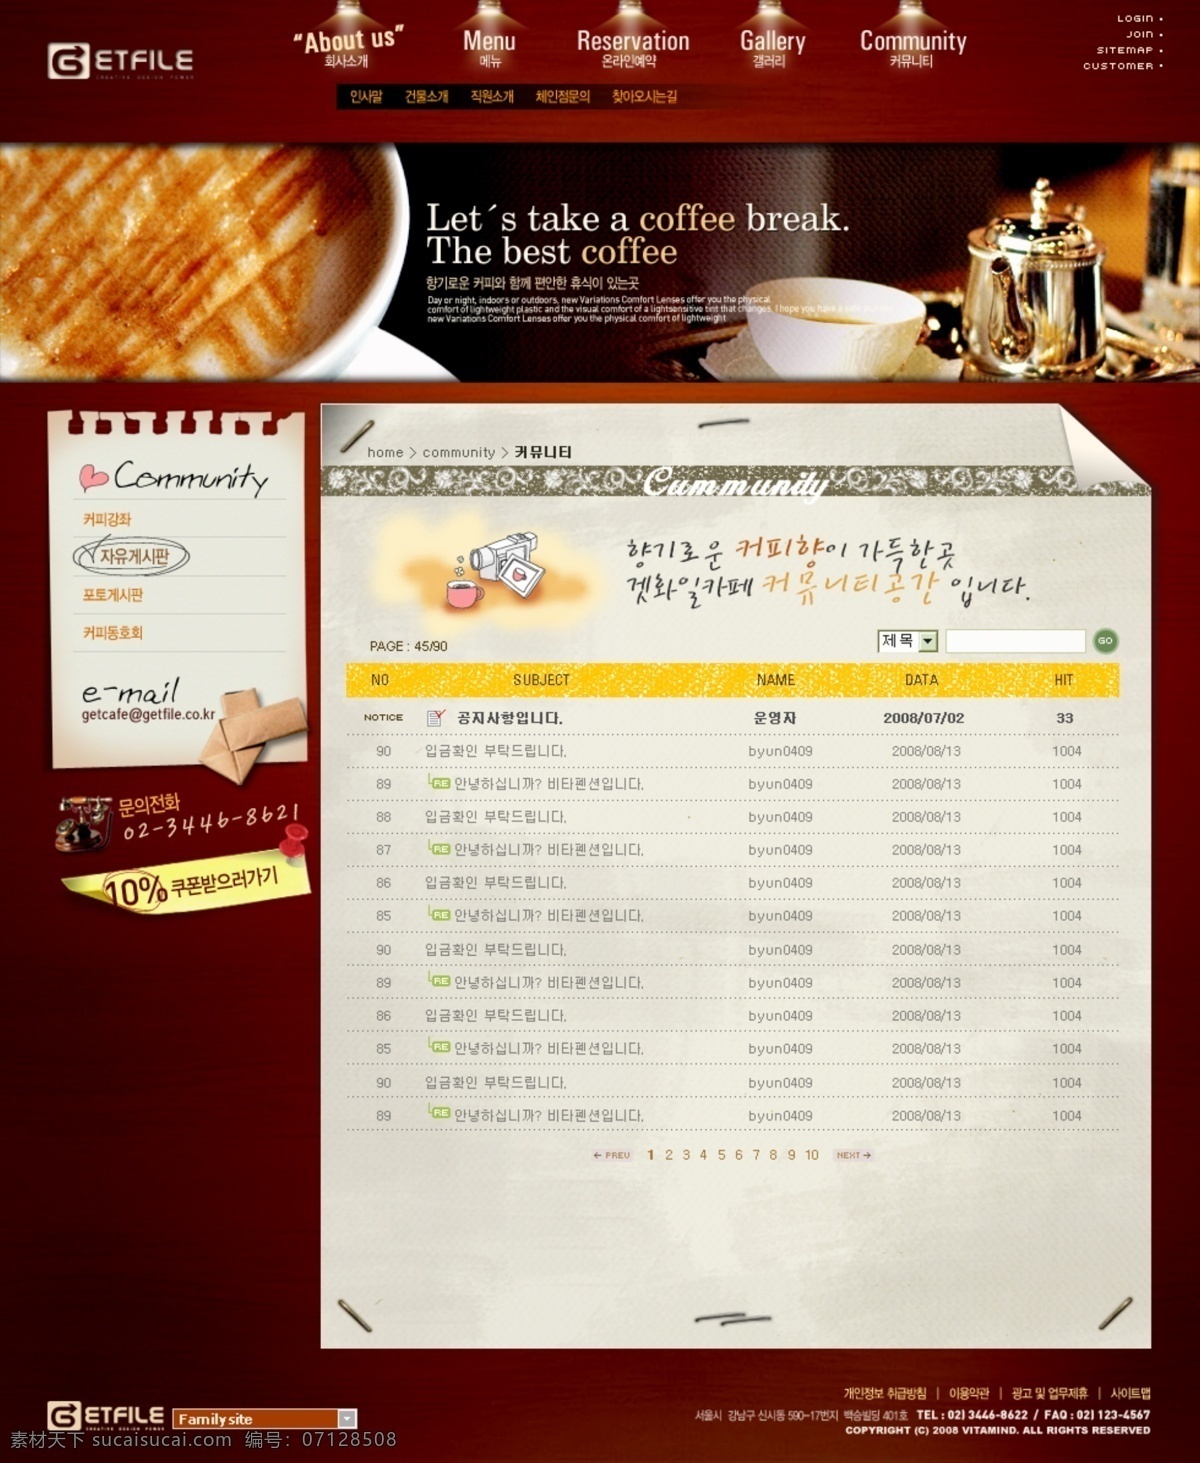 冰激凌 灯光 古典 韩国模板 韩国网站 咖啡网站 食品网站 网页模板 食品 网站 模板下载 水果网站 源文件 psd源文件 餐饮素材